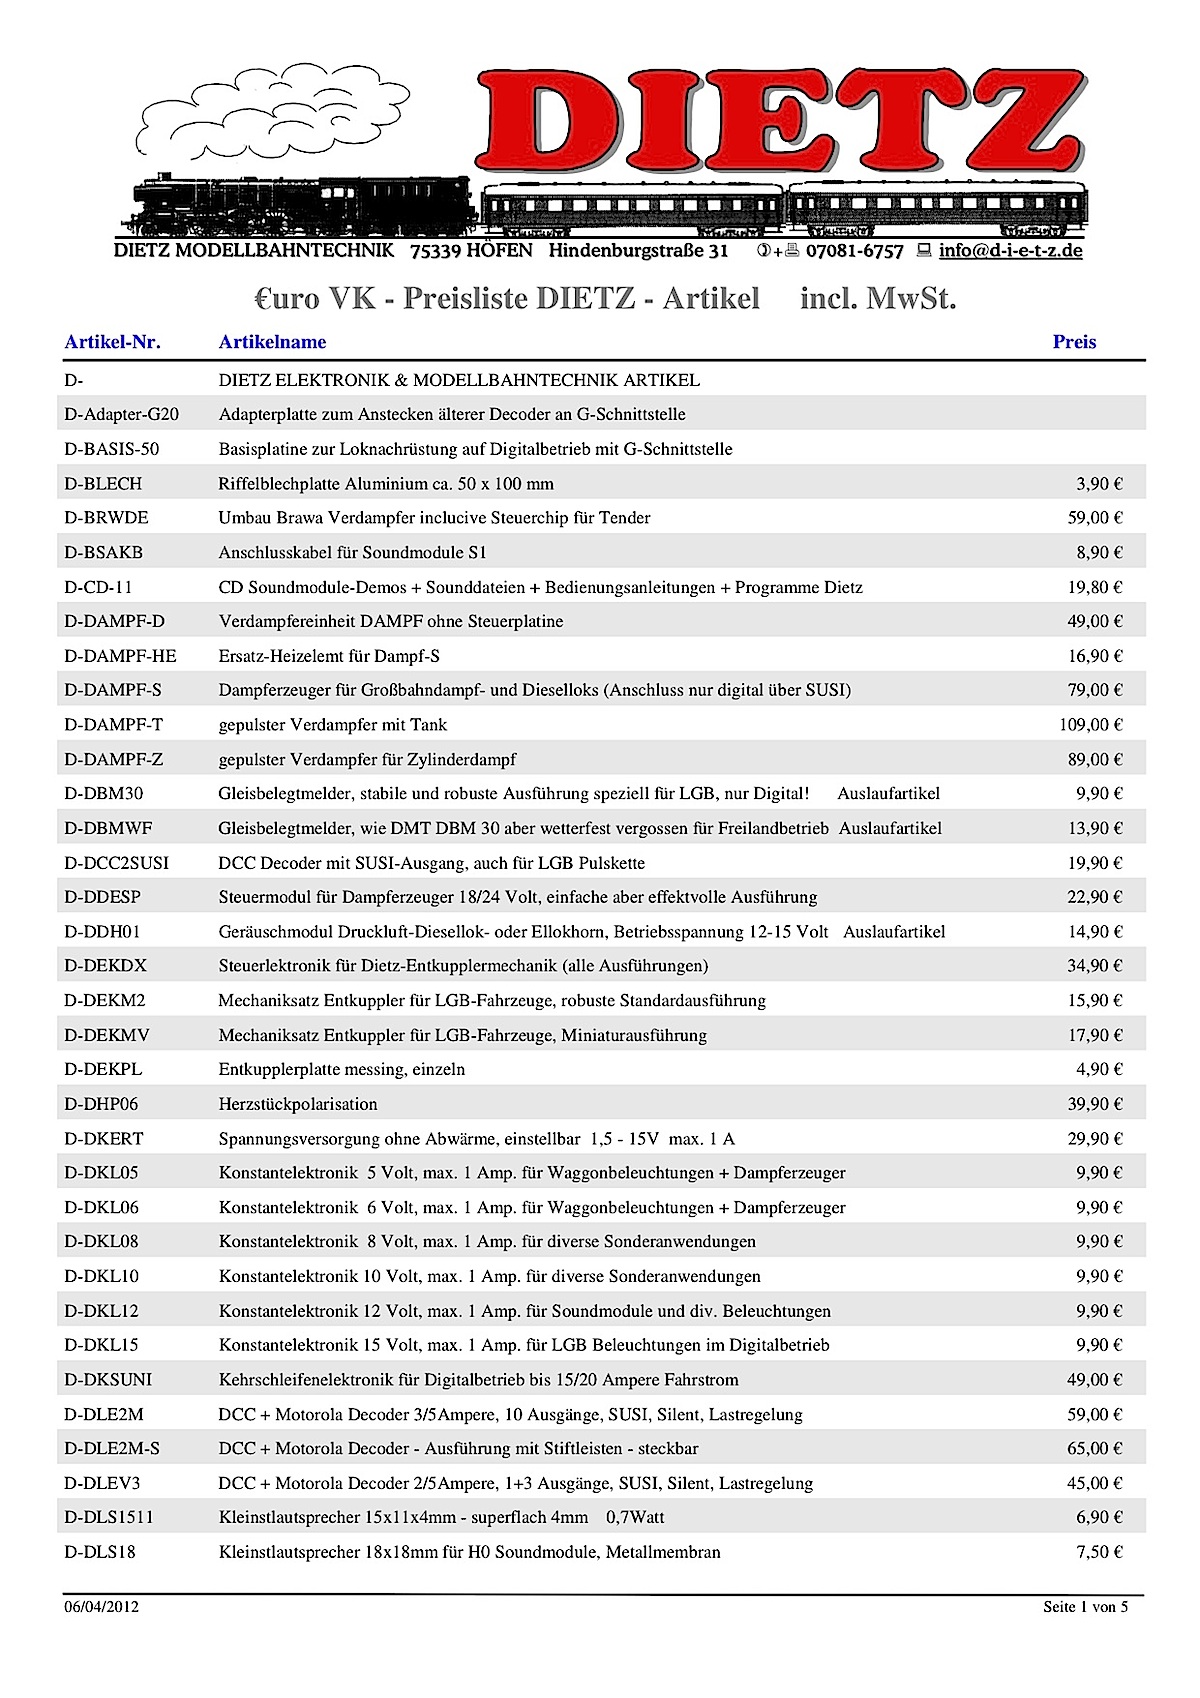 Dietz Preisliste (Price list) 2012